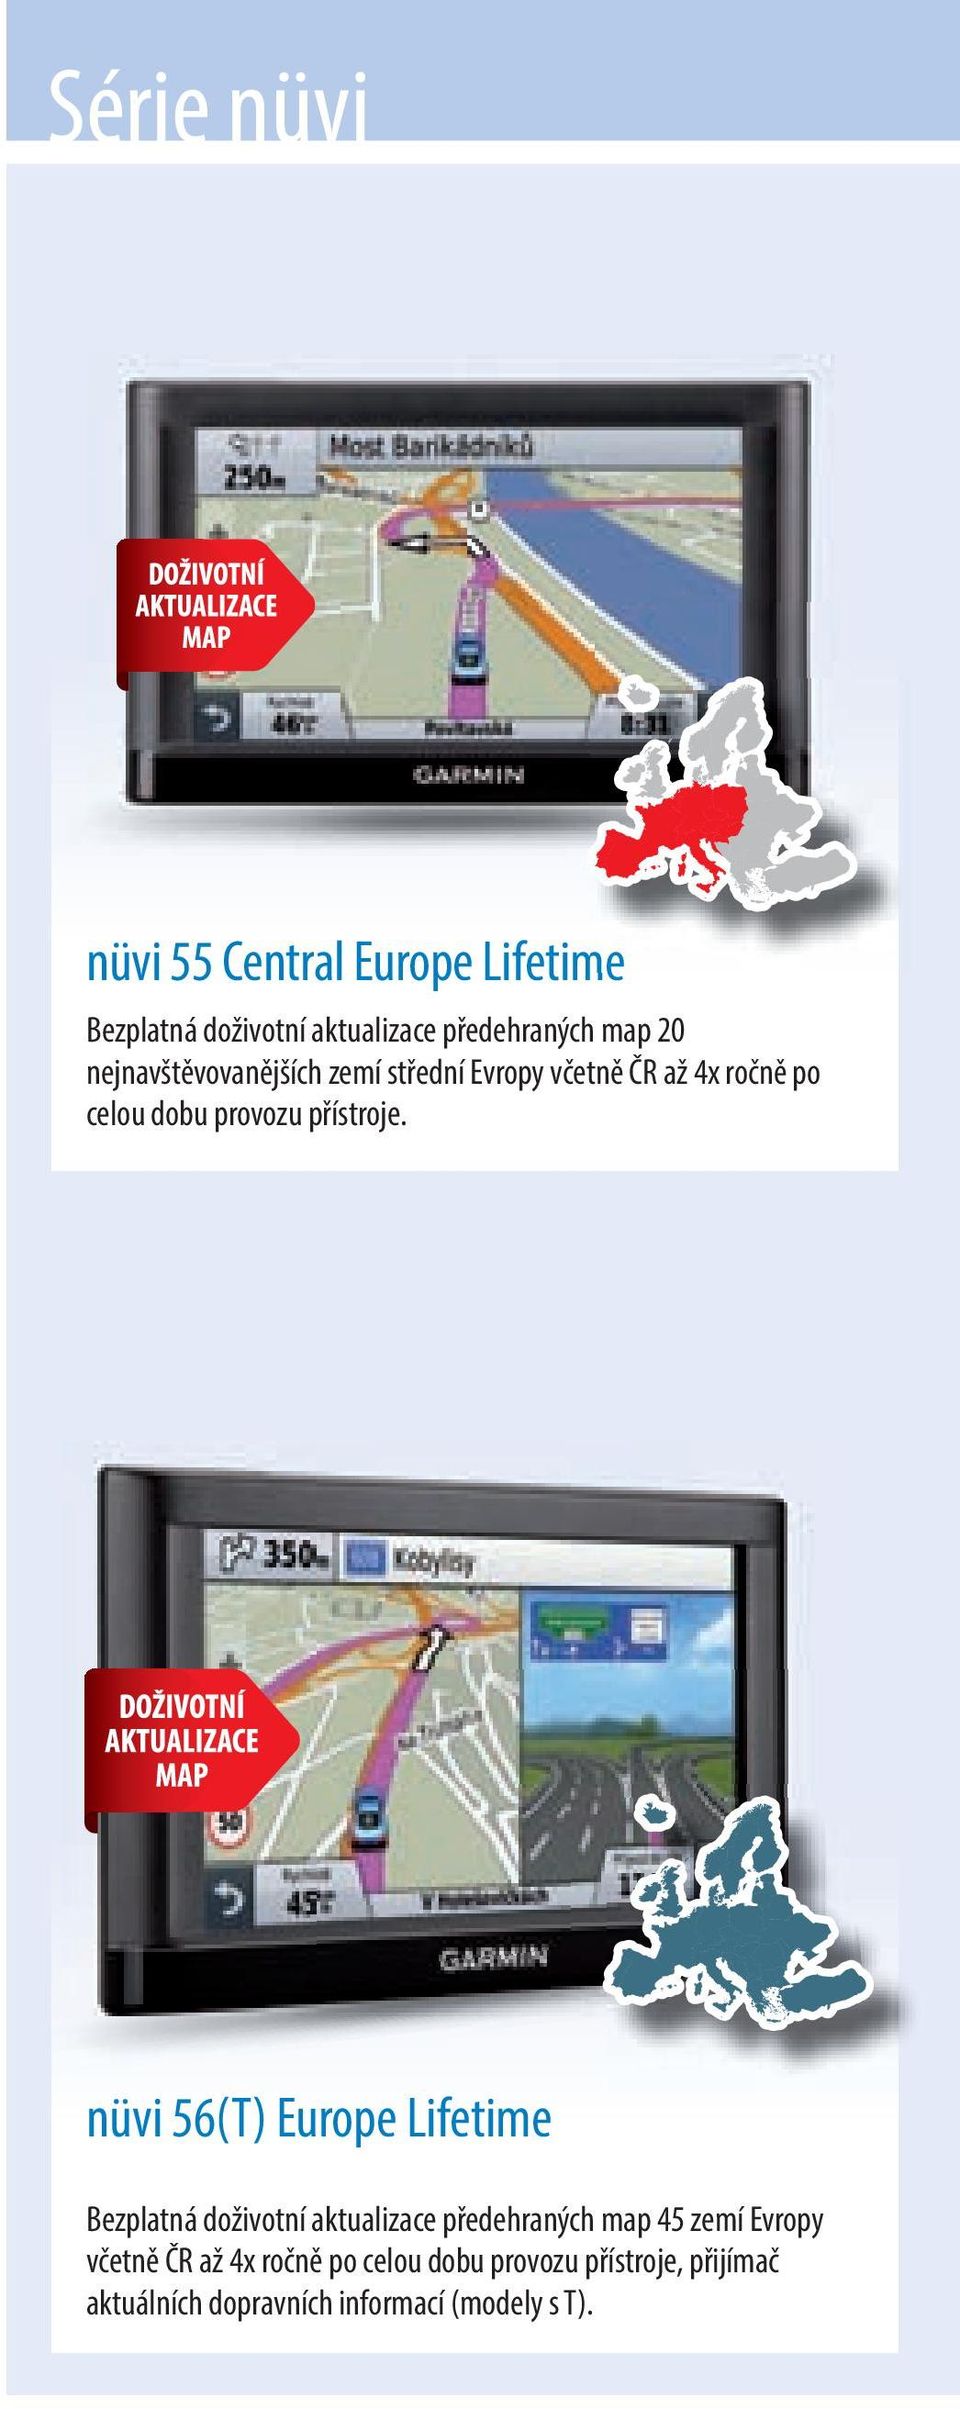 nüvi 56(T) Europe Lifetime Bezplatná doživotní aktualizace předehraných map 45 zemí Evropy včetně